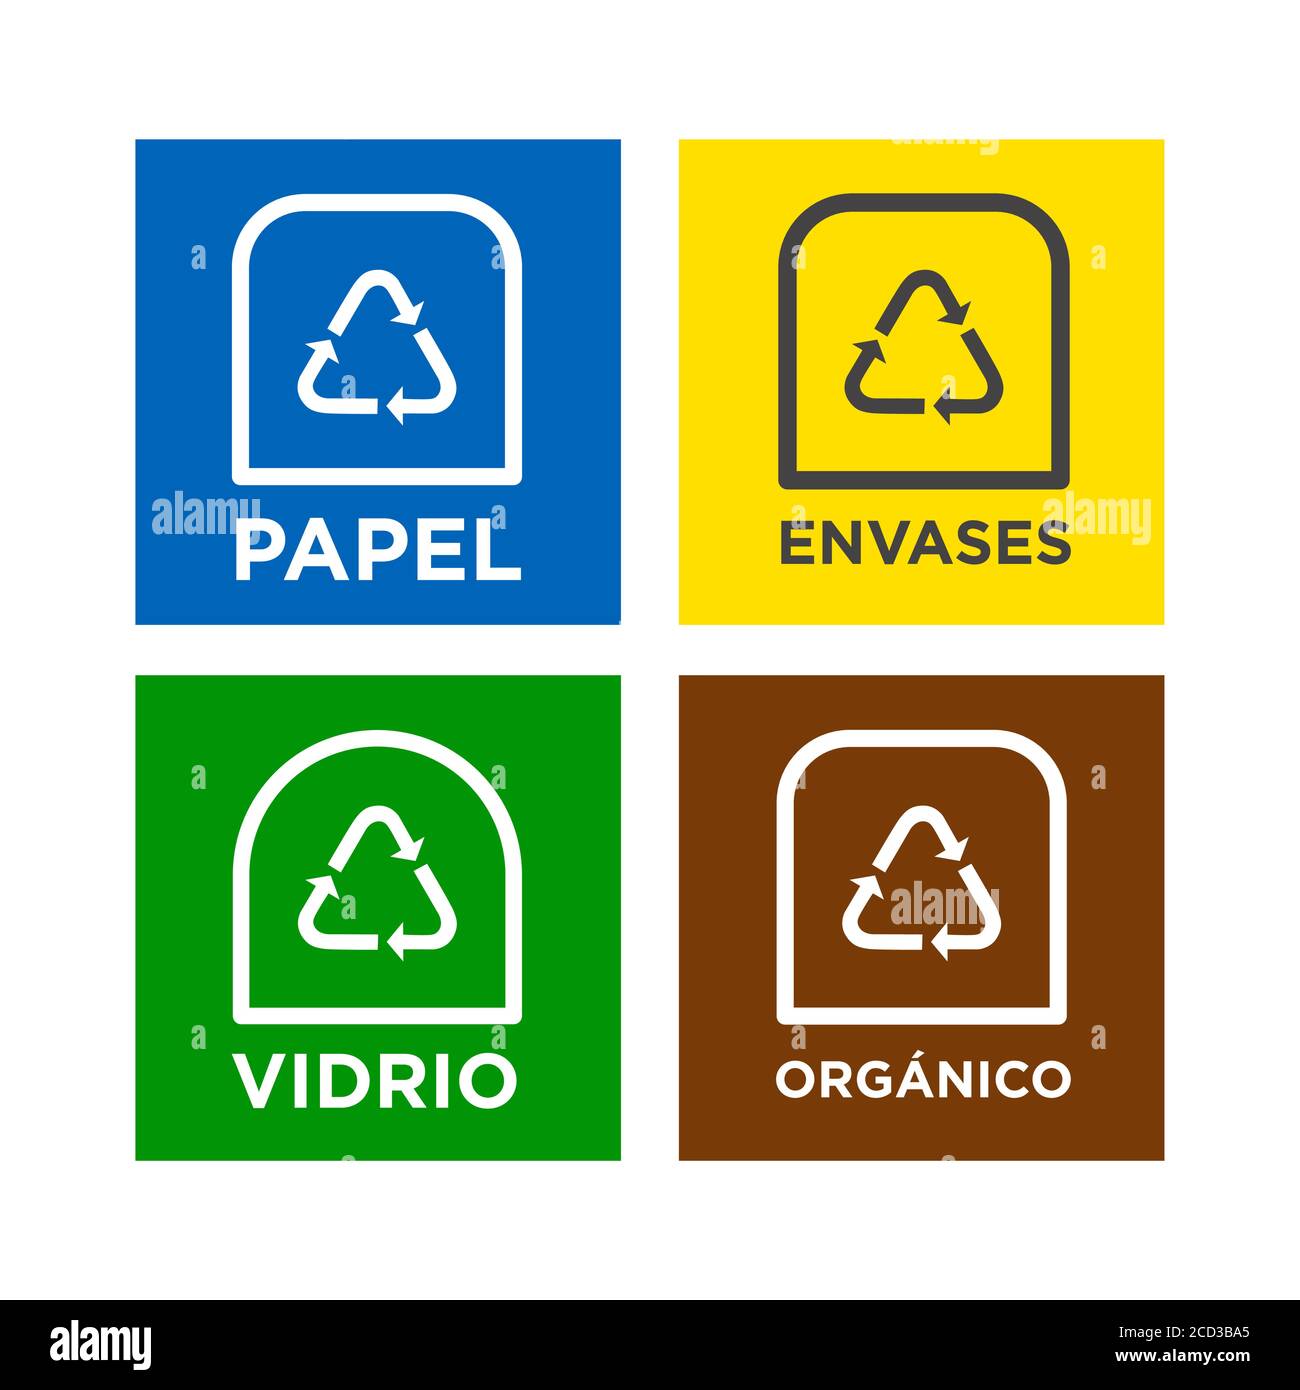 Informationssymbole für Produktetiketten zum Recycling. Symbole für Papier,  Glas, Verpackungen und organisches Recycling in spanischer Sprache  Stock-Vektorgrafik - Alamy